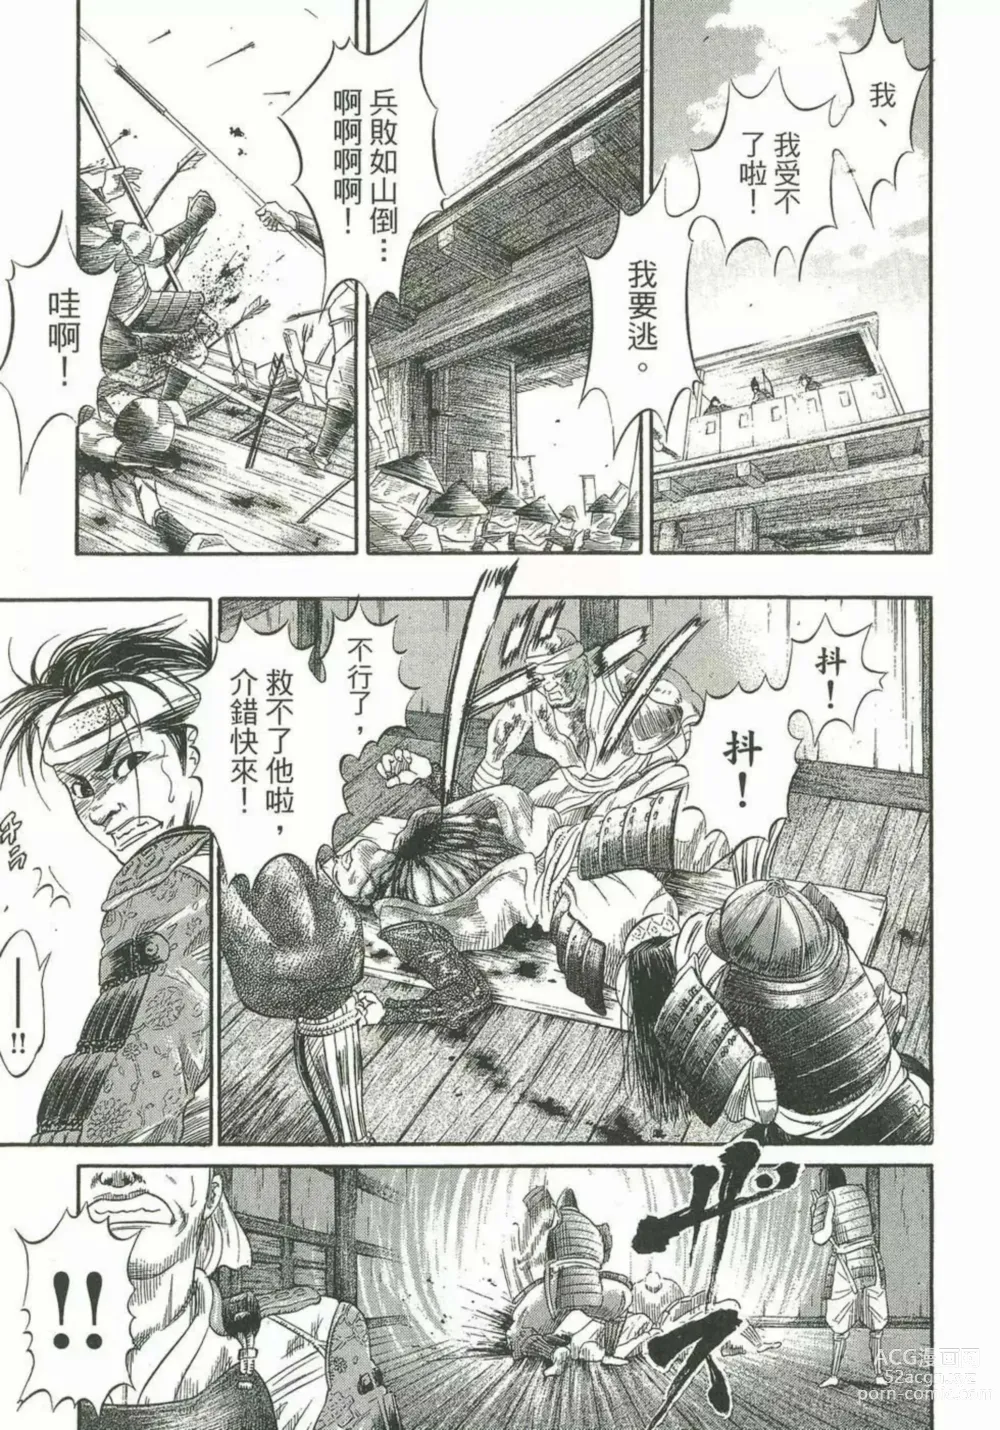 Page 7 of manga [宫下英树]战国第一卷［中文］